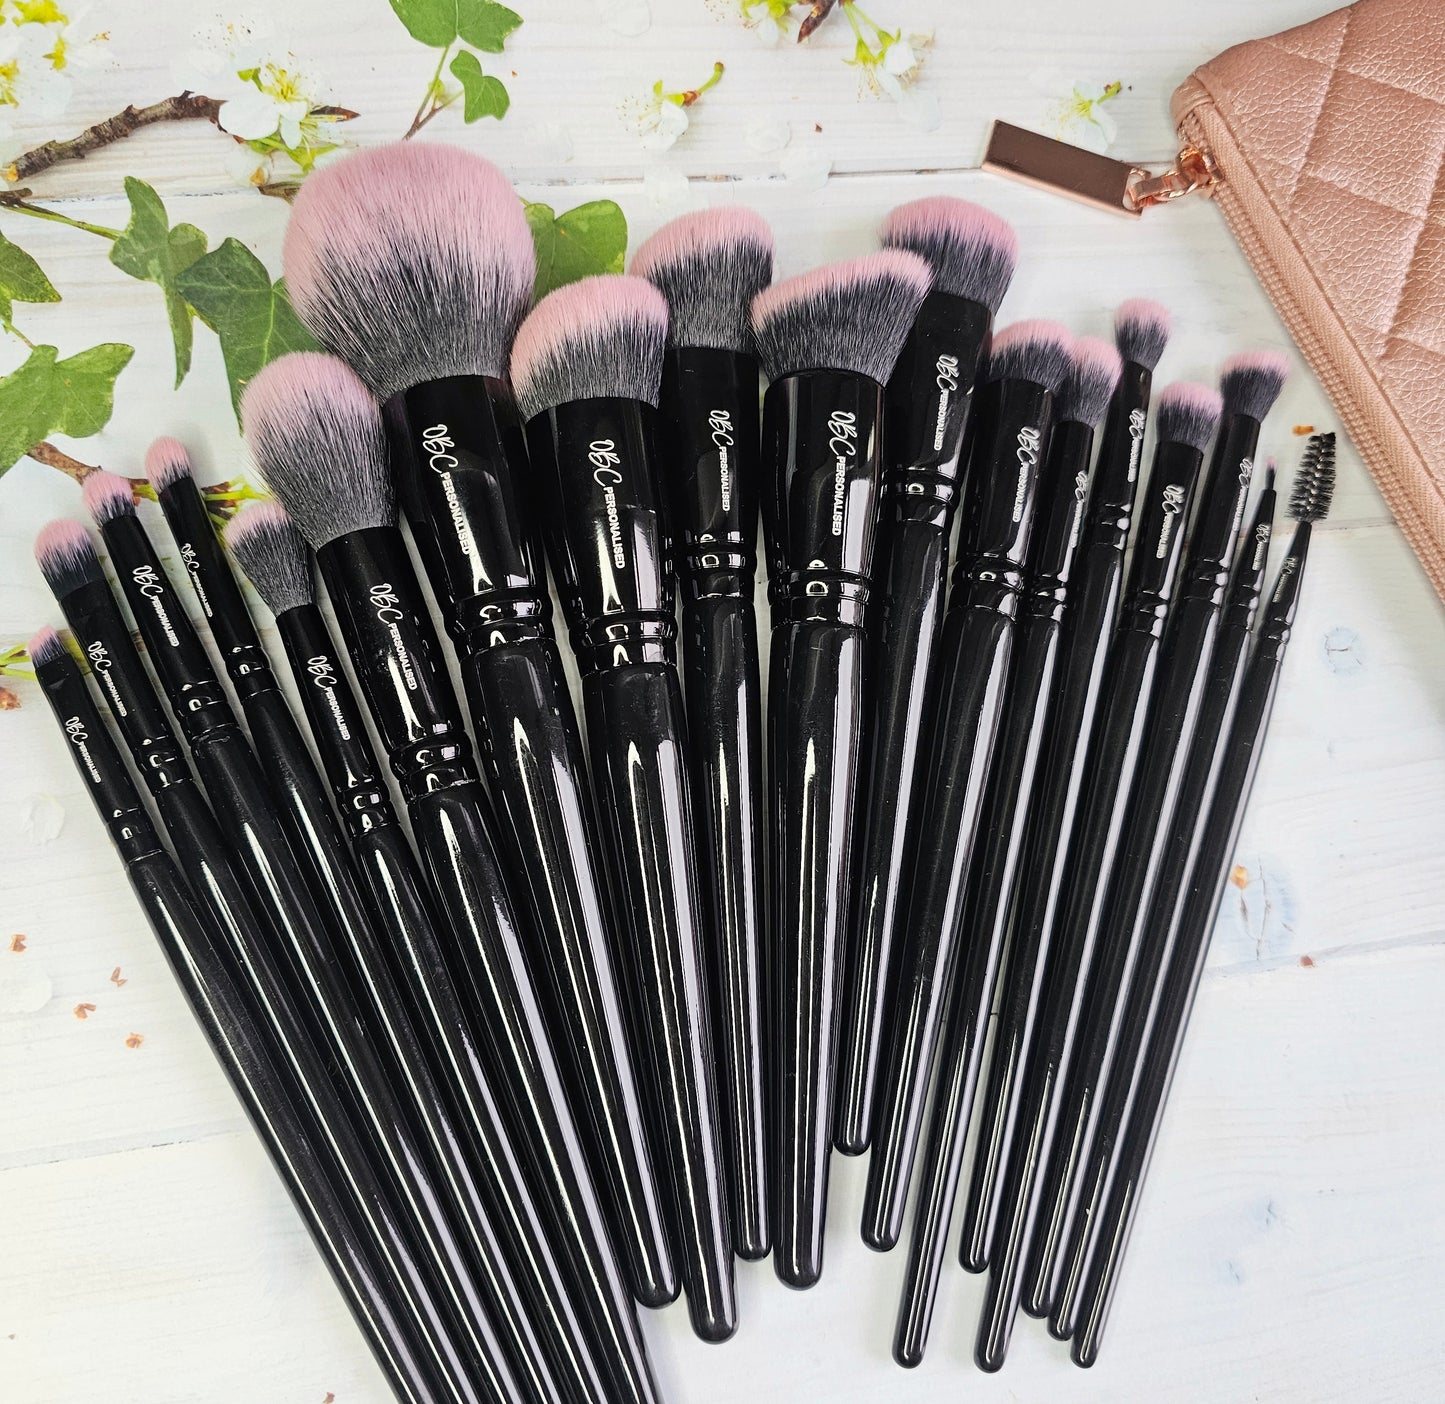 18 piece professional makeup brush set, with FREE bag.